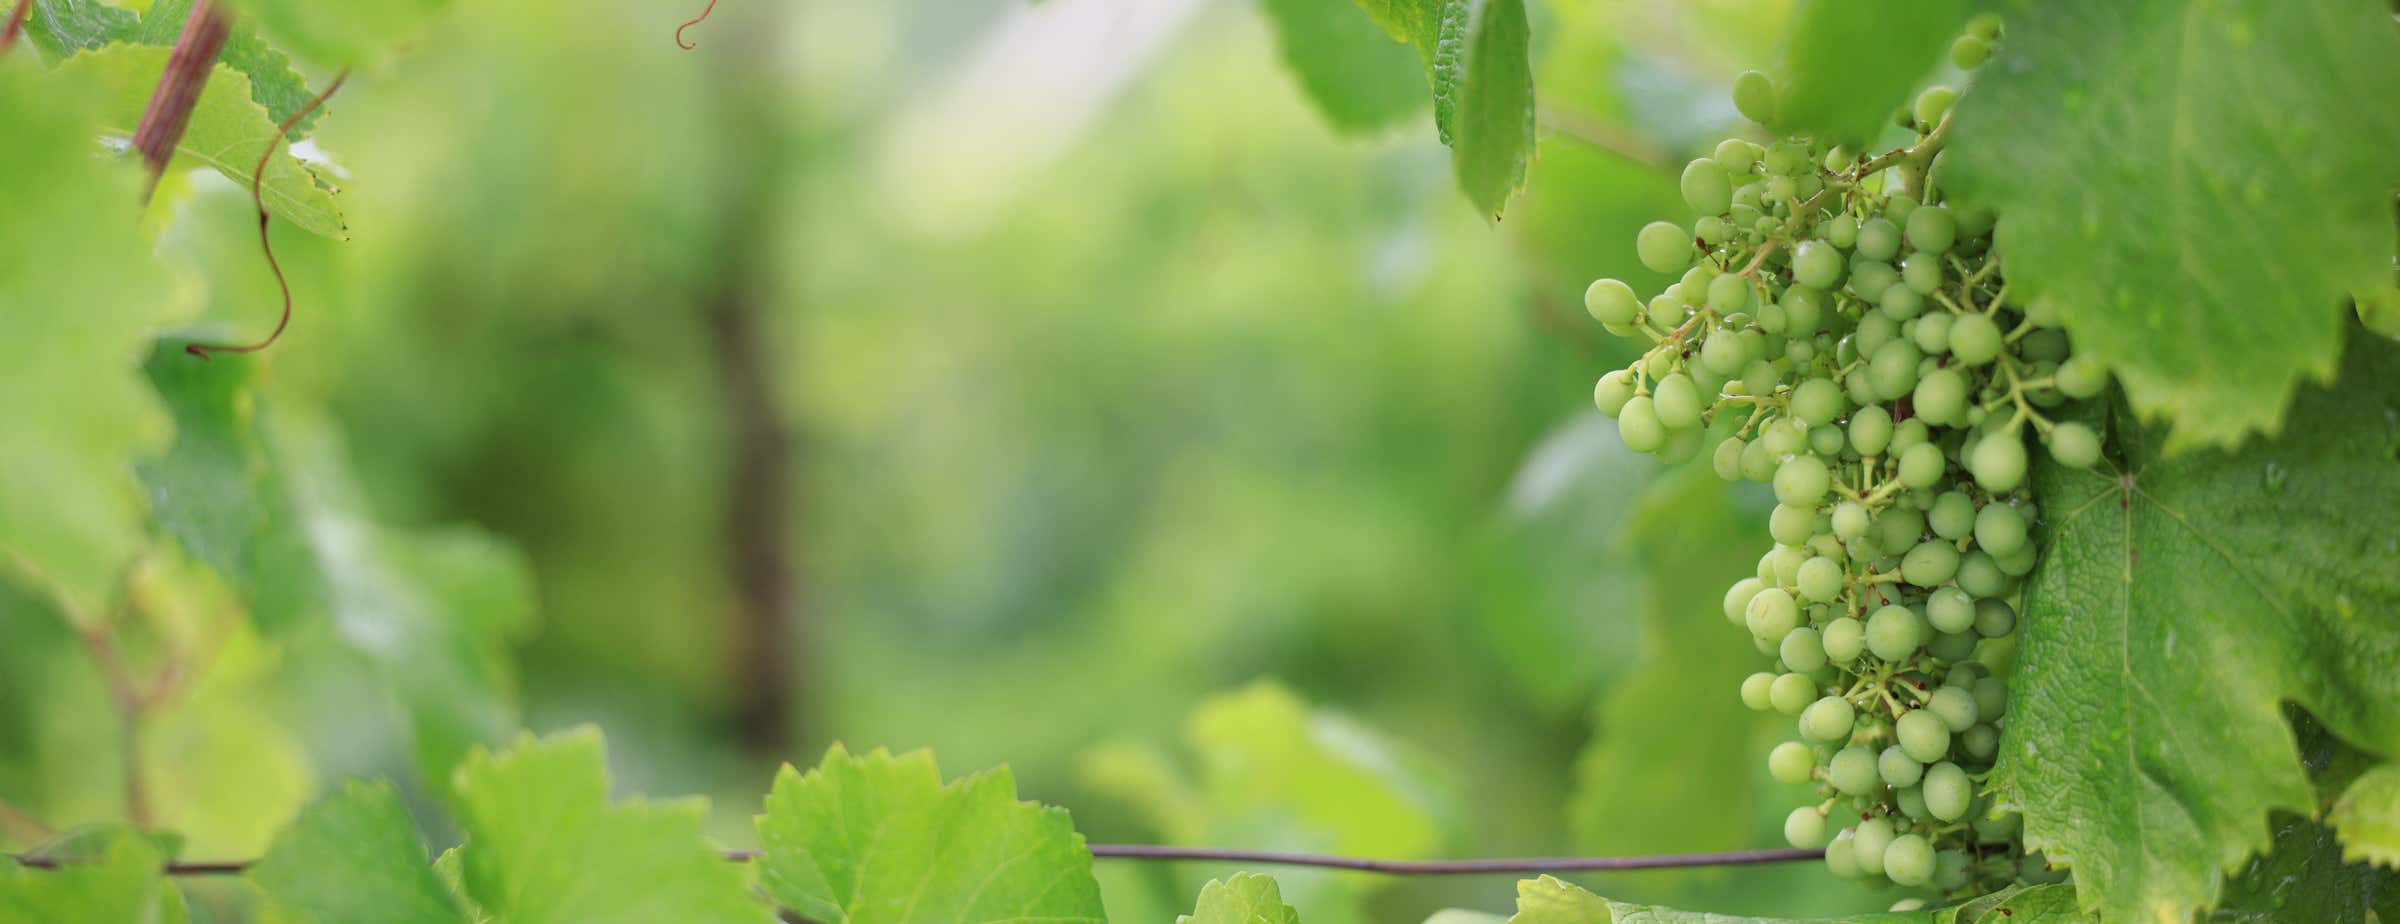 Immagine di grappoli di uva verde appesi in un vigneto circondato da foglie verdi.